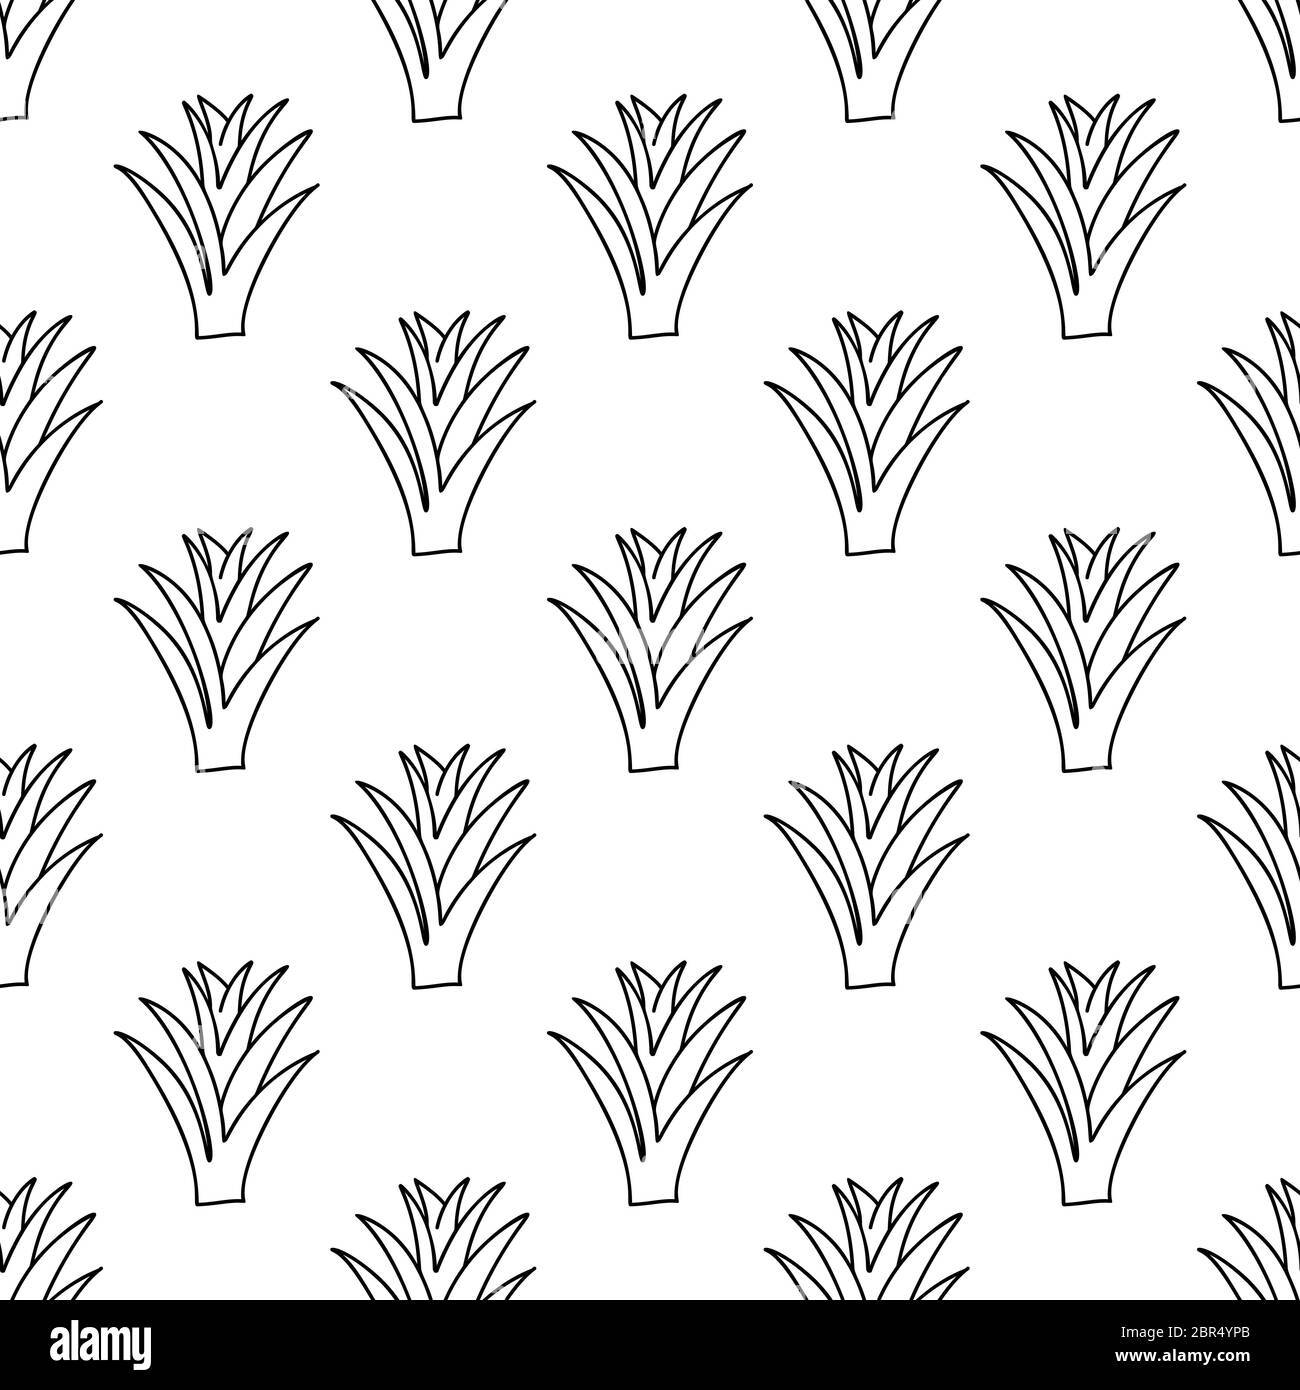 Doodle Aloe Vera Pflanze. Florales Nahtloses Muster. Isoliert auf weißem Hintergrund. Vektorgrafik. Stock Vektor